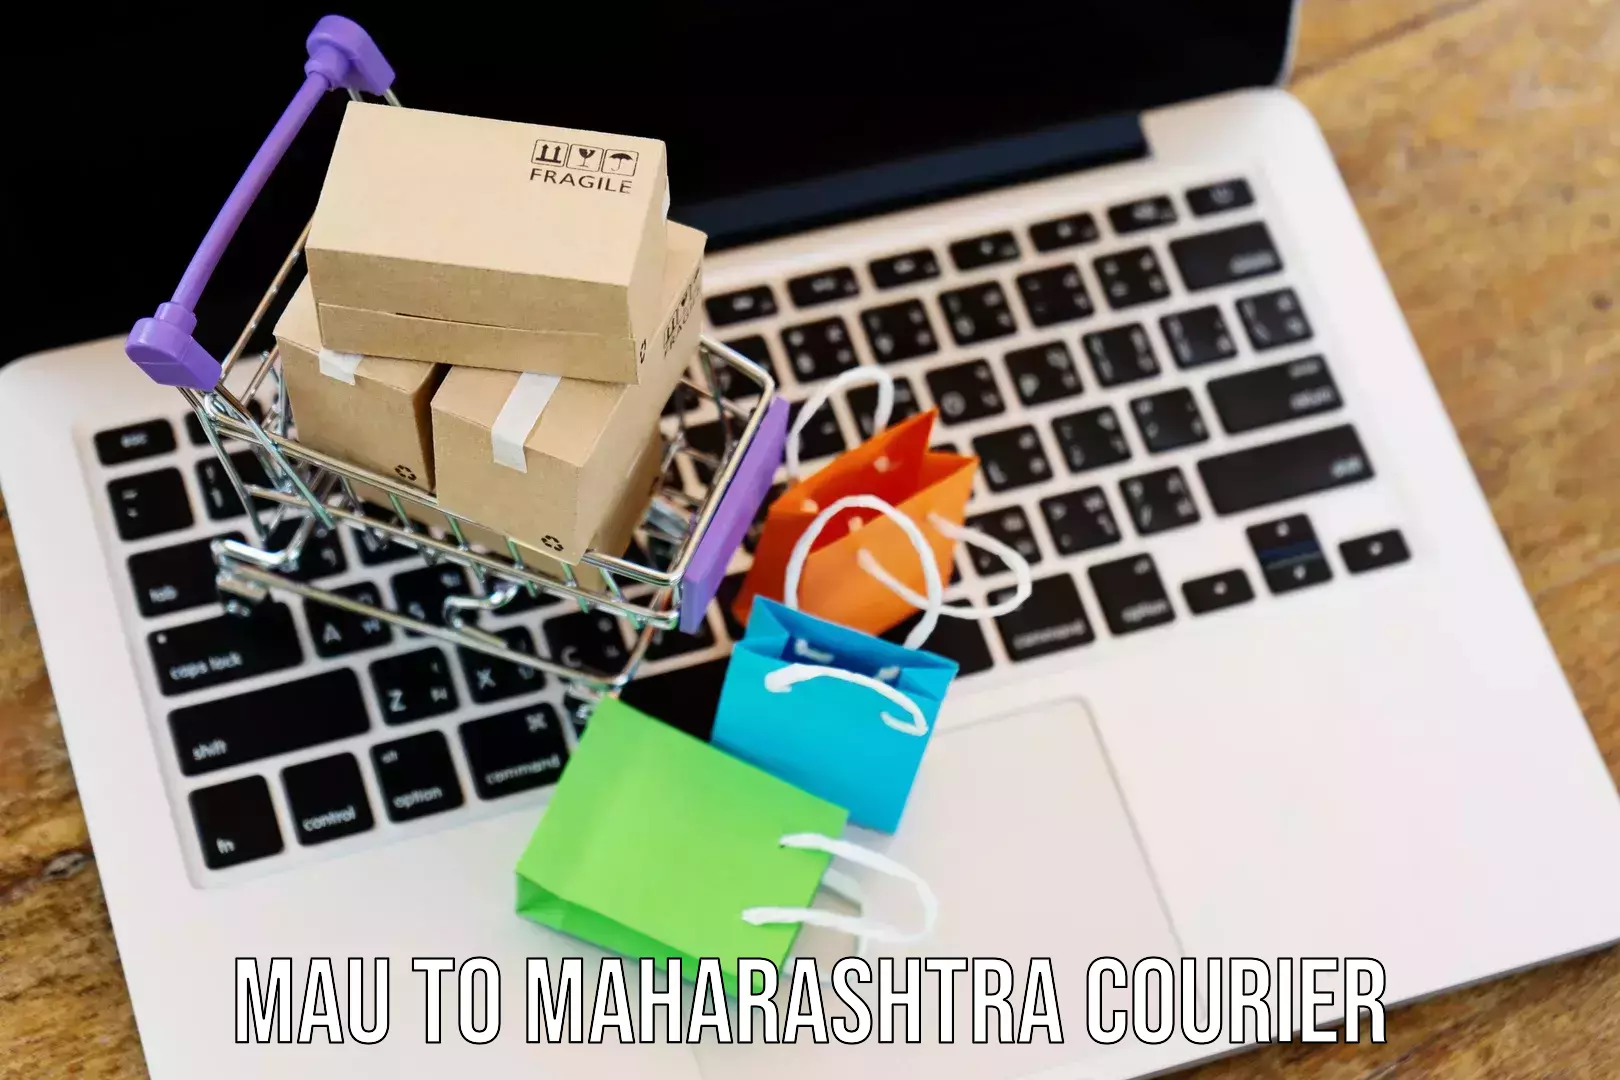 Nationwide courier service Mau to Maharashtra